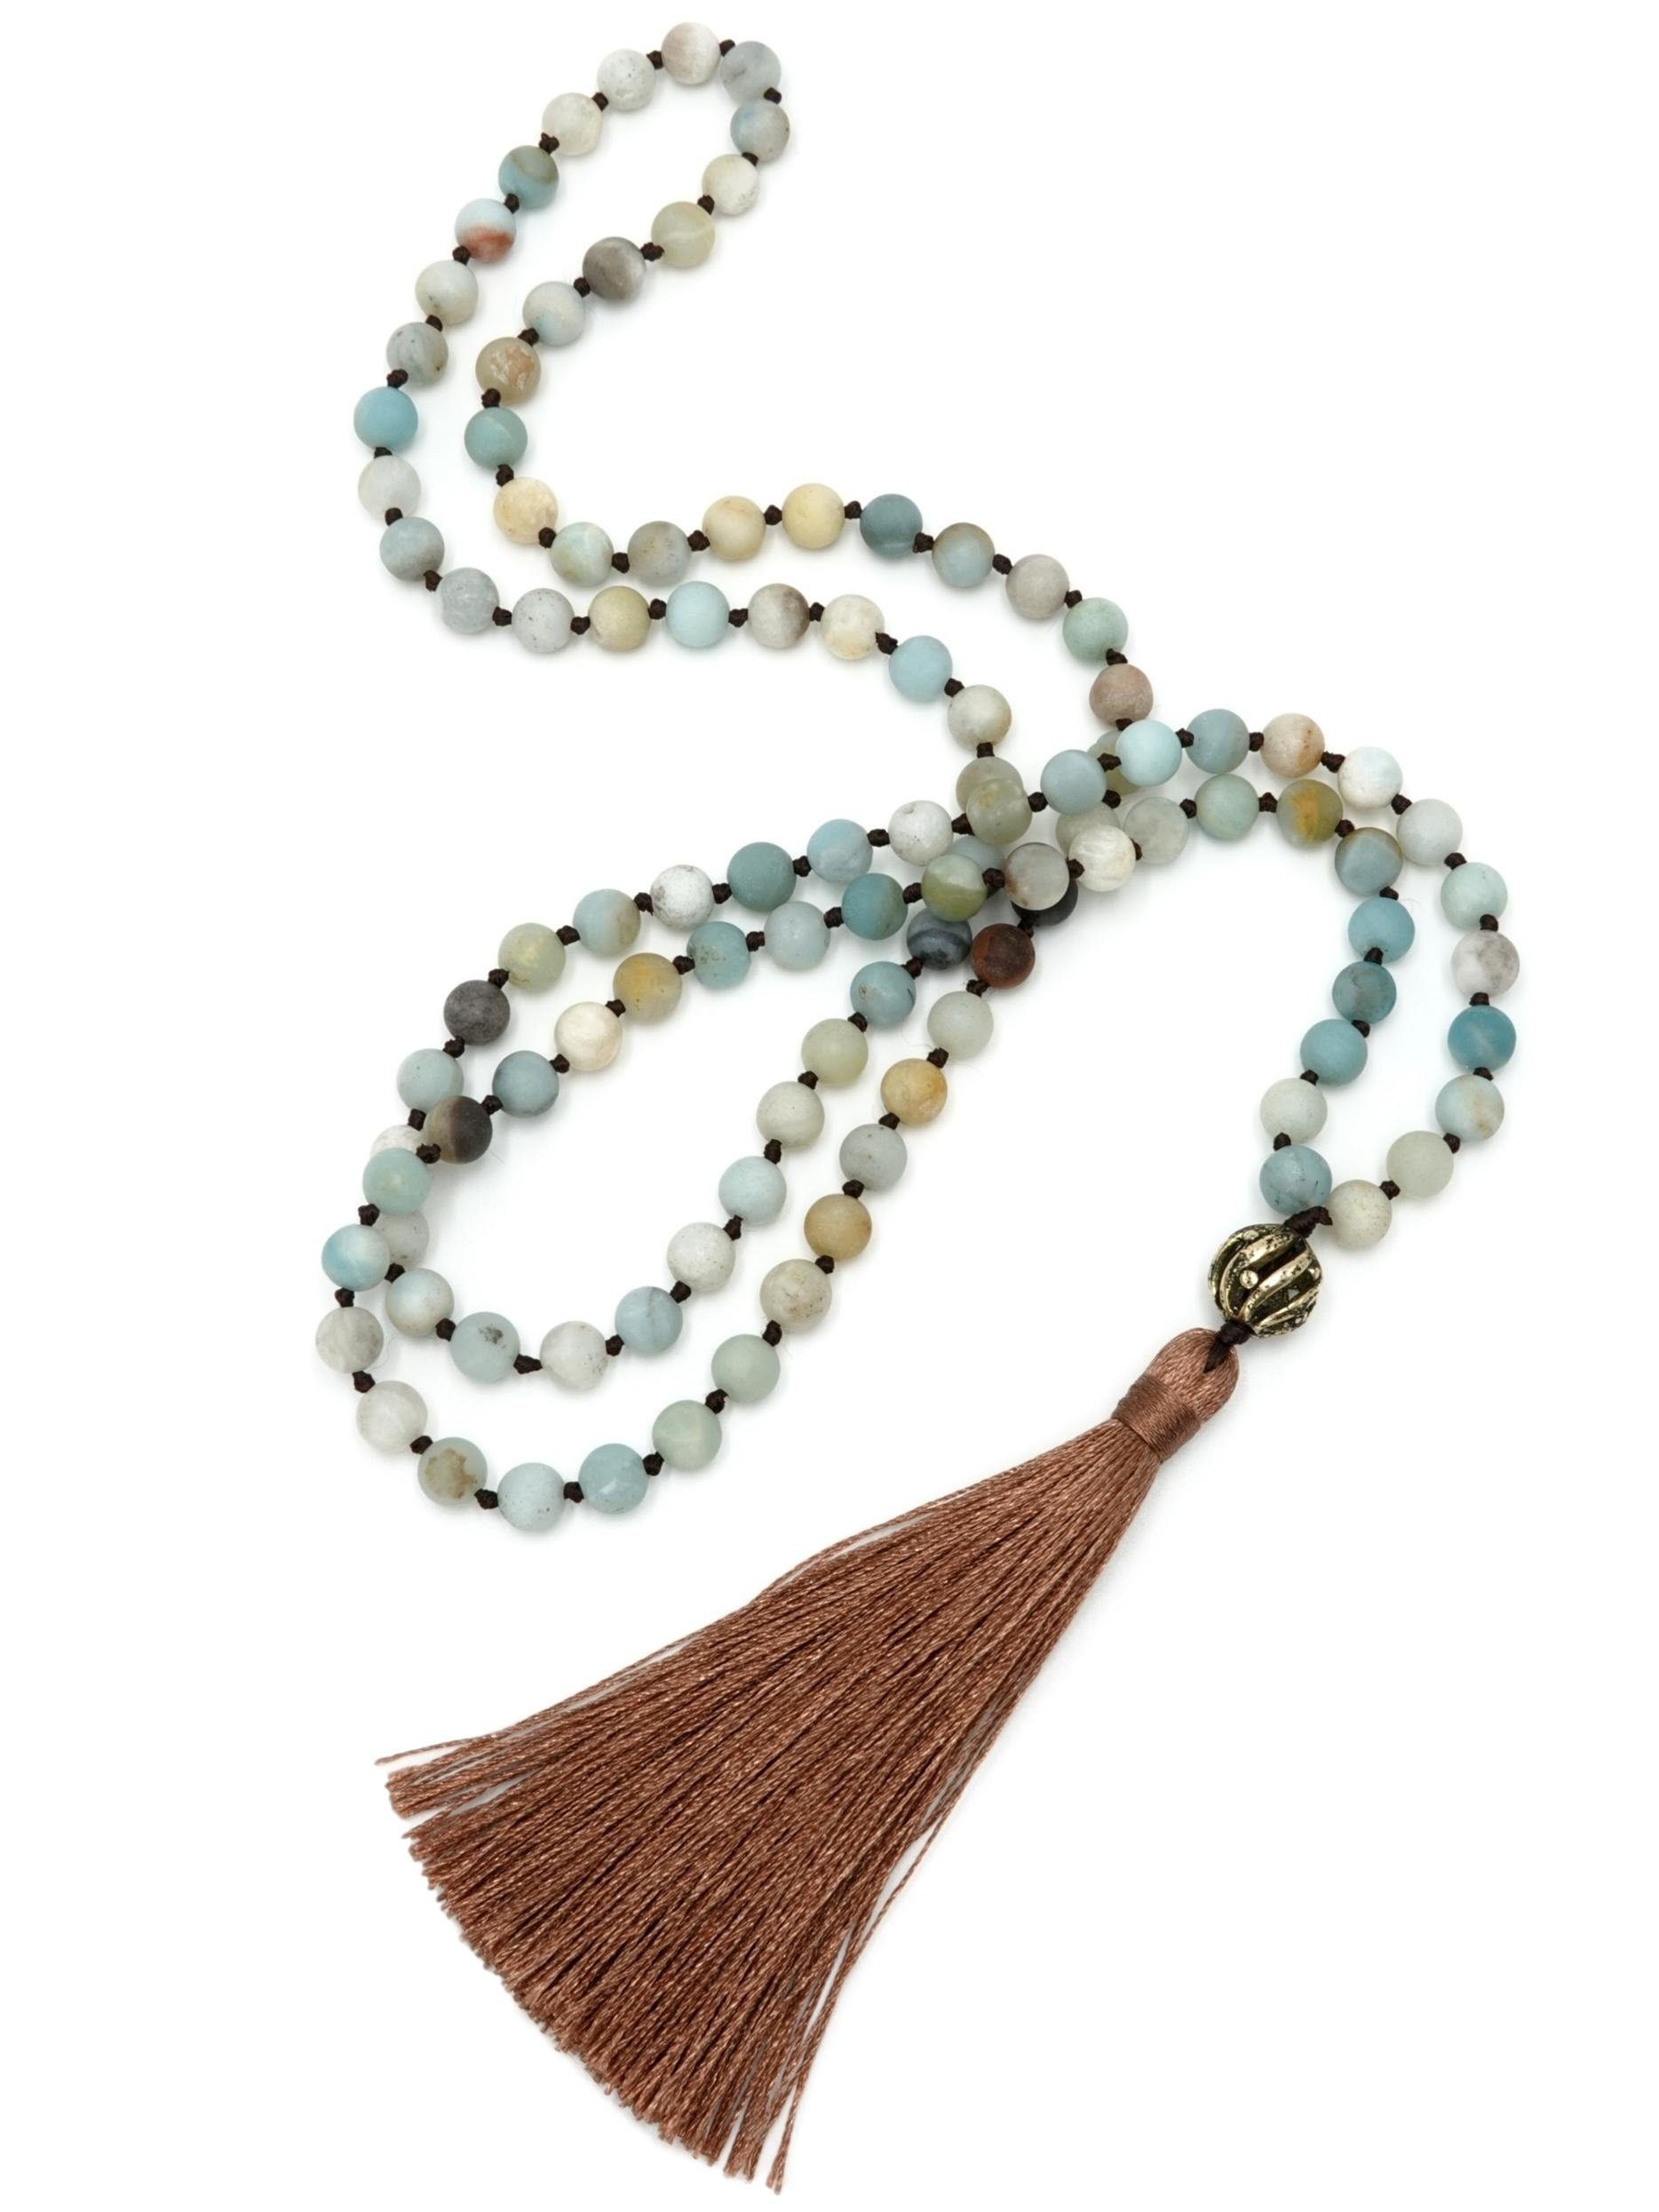 BENAVA Perlenkette »Mala Kette 108 Perlen - Amazonit Blau«, Handgemacht  online kaufen | OTTO